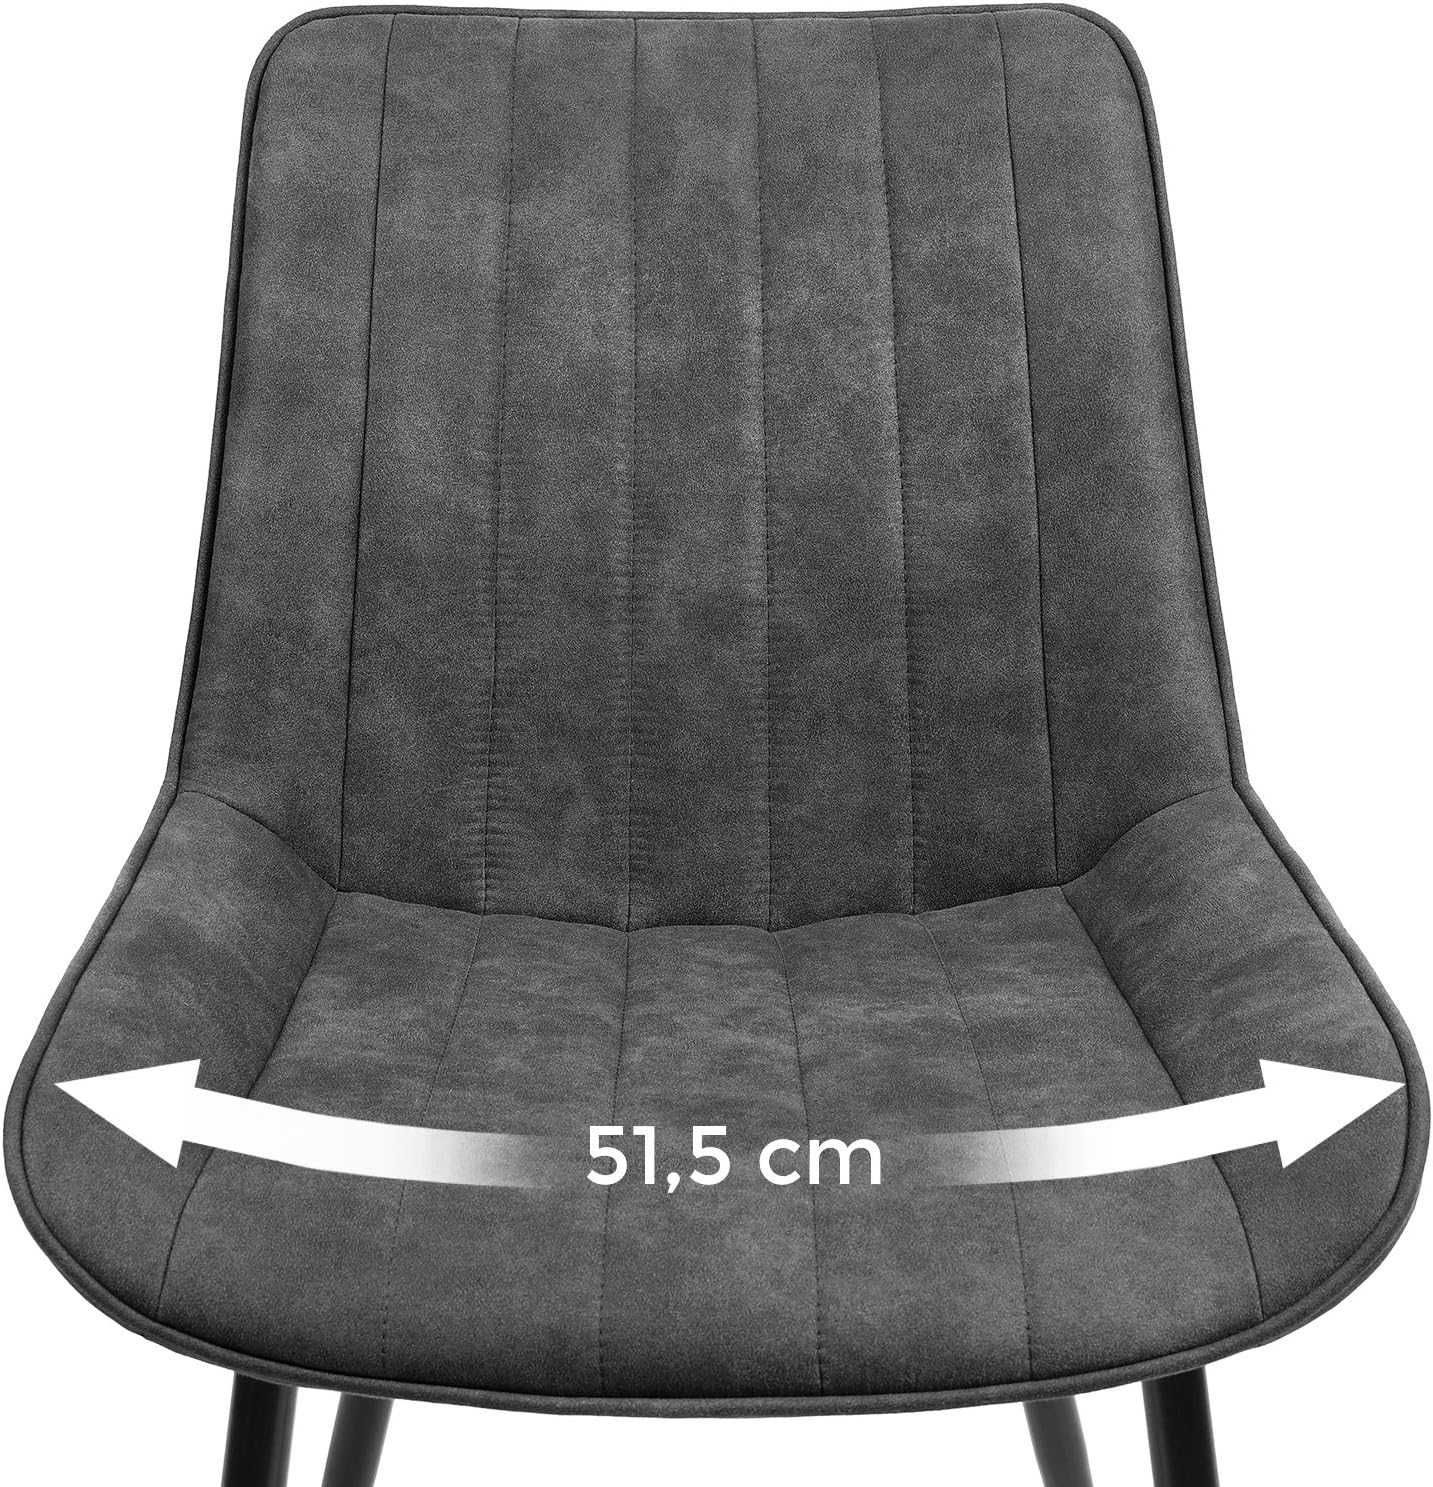 5M53 SONGMICS zestaw 2 krzeseł 2x krzesło aksamit pikowane metal loft